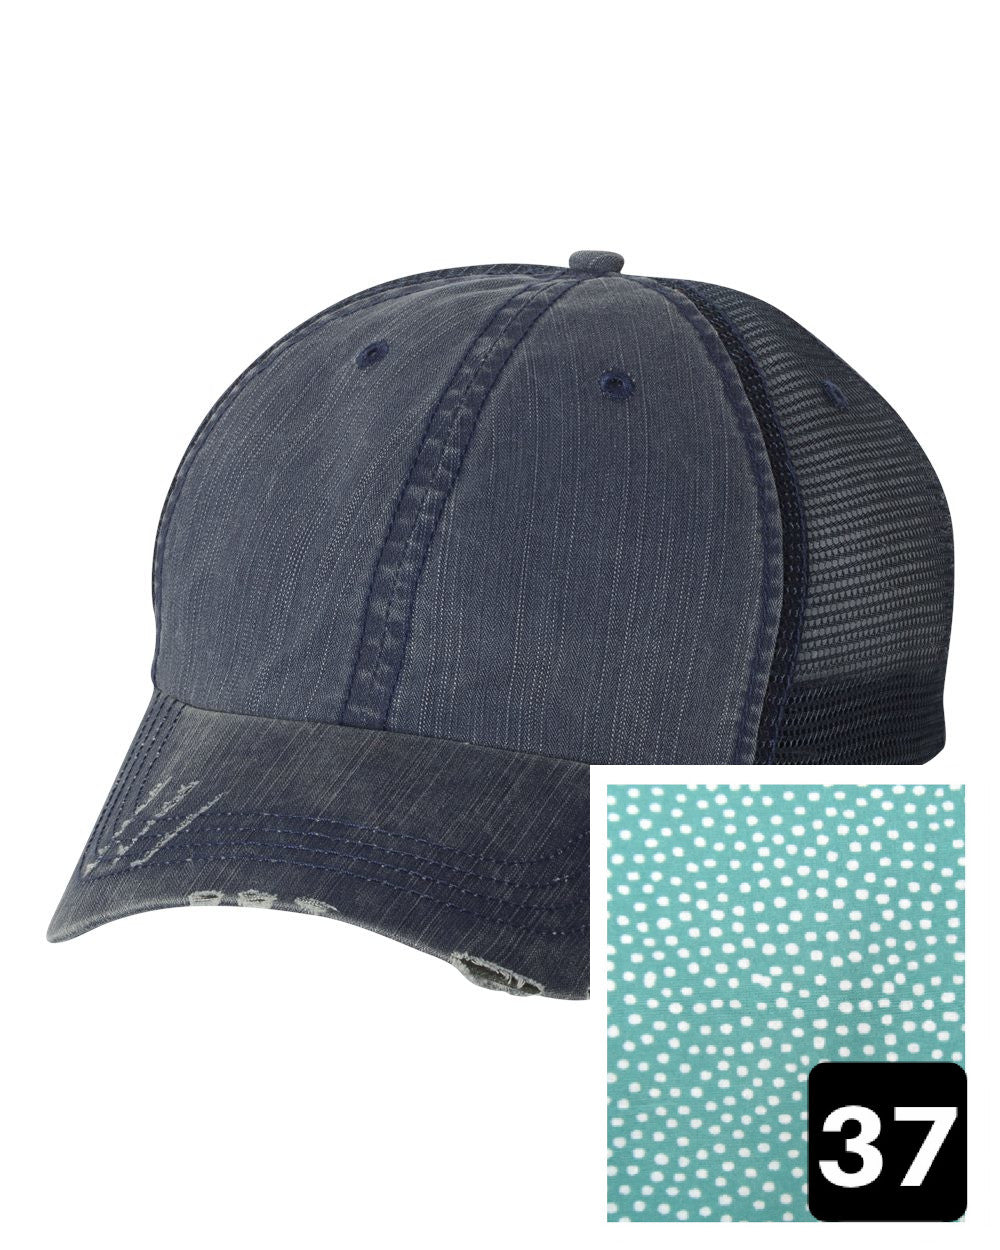 Louisiana Hat | Navy Distressed Trucker Cap | Many Fabric Choices